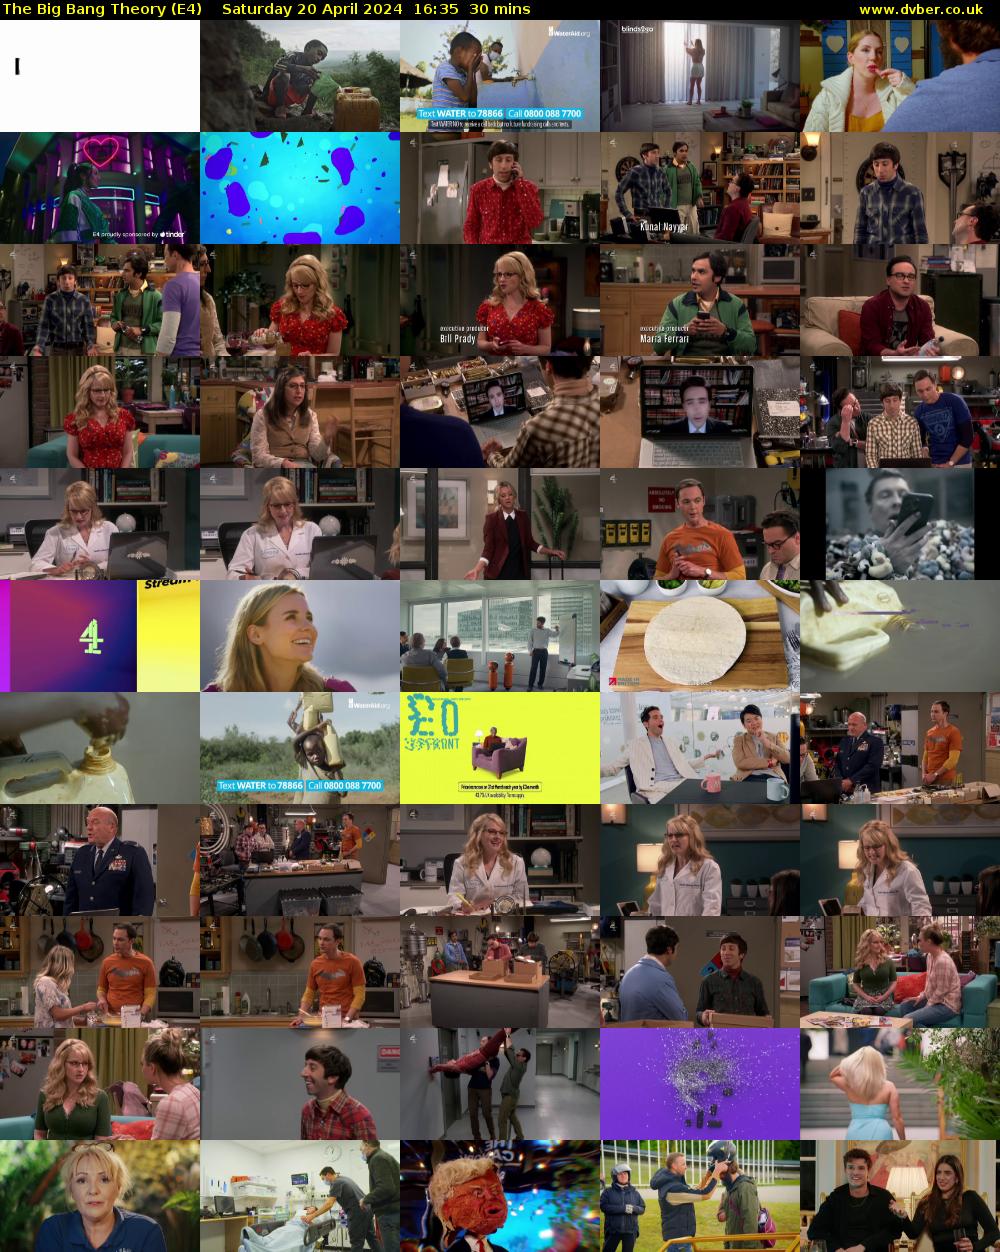 The Big Bang Theory (E4) Saturday 20 April 2024 16:35 - 17:05